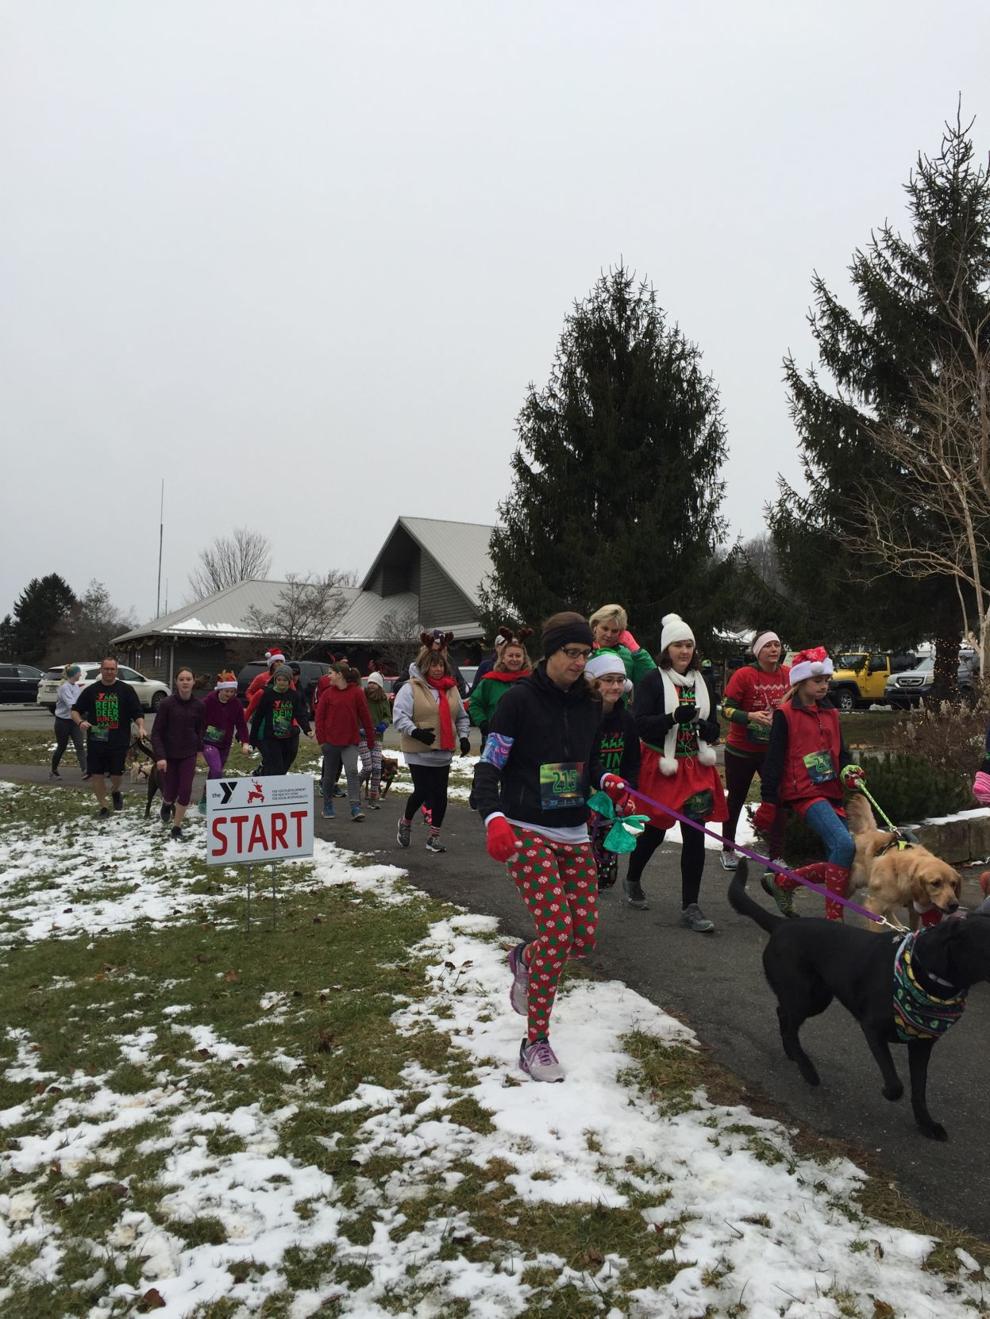 YMCA hosts annual Reindeer Run in Banner Elk News